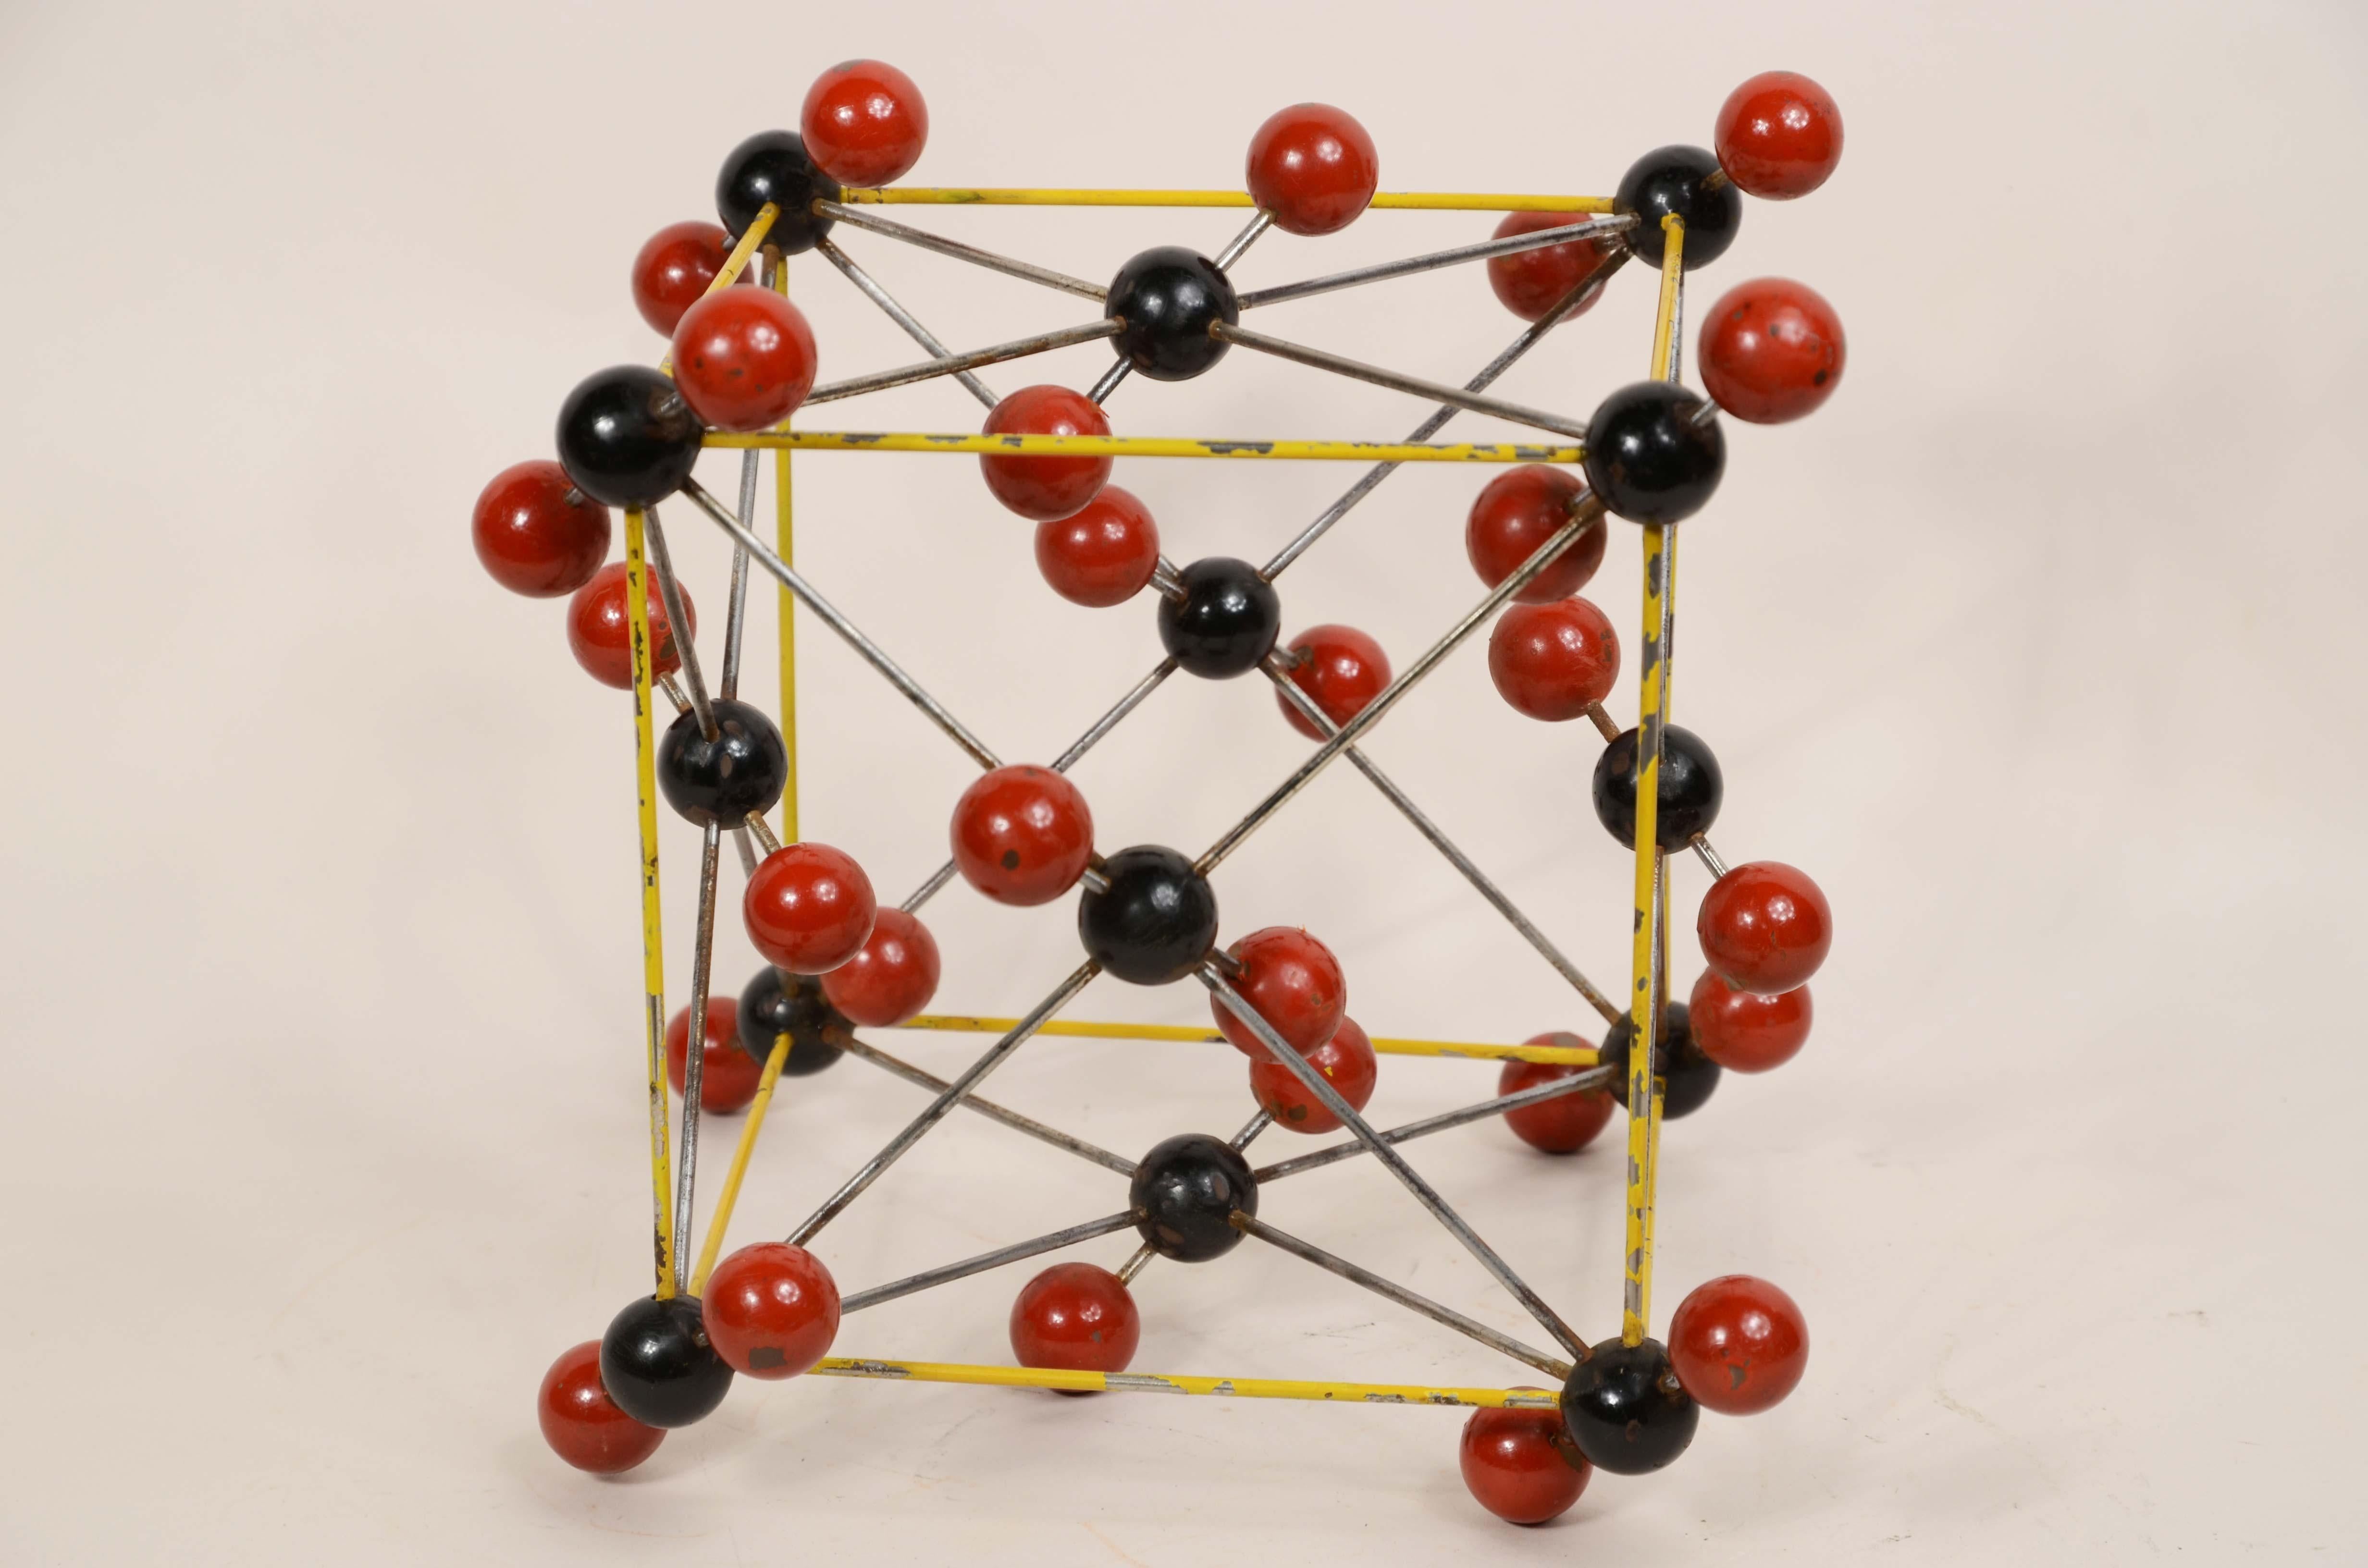 Atomare Struktur von Kohlensäure (H2CO3) aus Metall, Bakelitkugeln mit roter und schwarzer Bemalung für Unterrichtszwecke. Tschechoslowakische Produktion aus den 1950er Jahren. 
Guter Zustand mit Gebrauchsspuren, Maße 20x20x20 cm.
Das letzte Foto